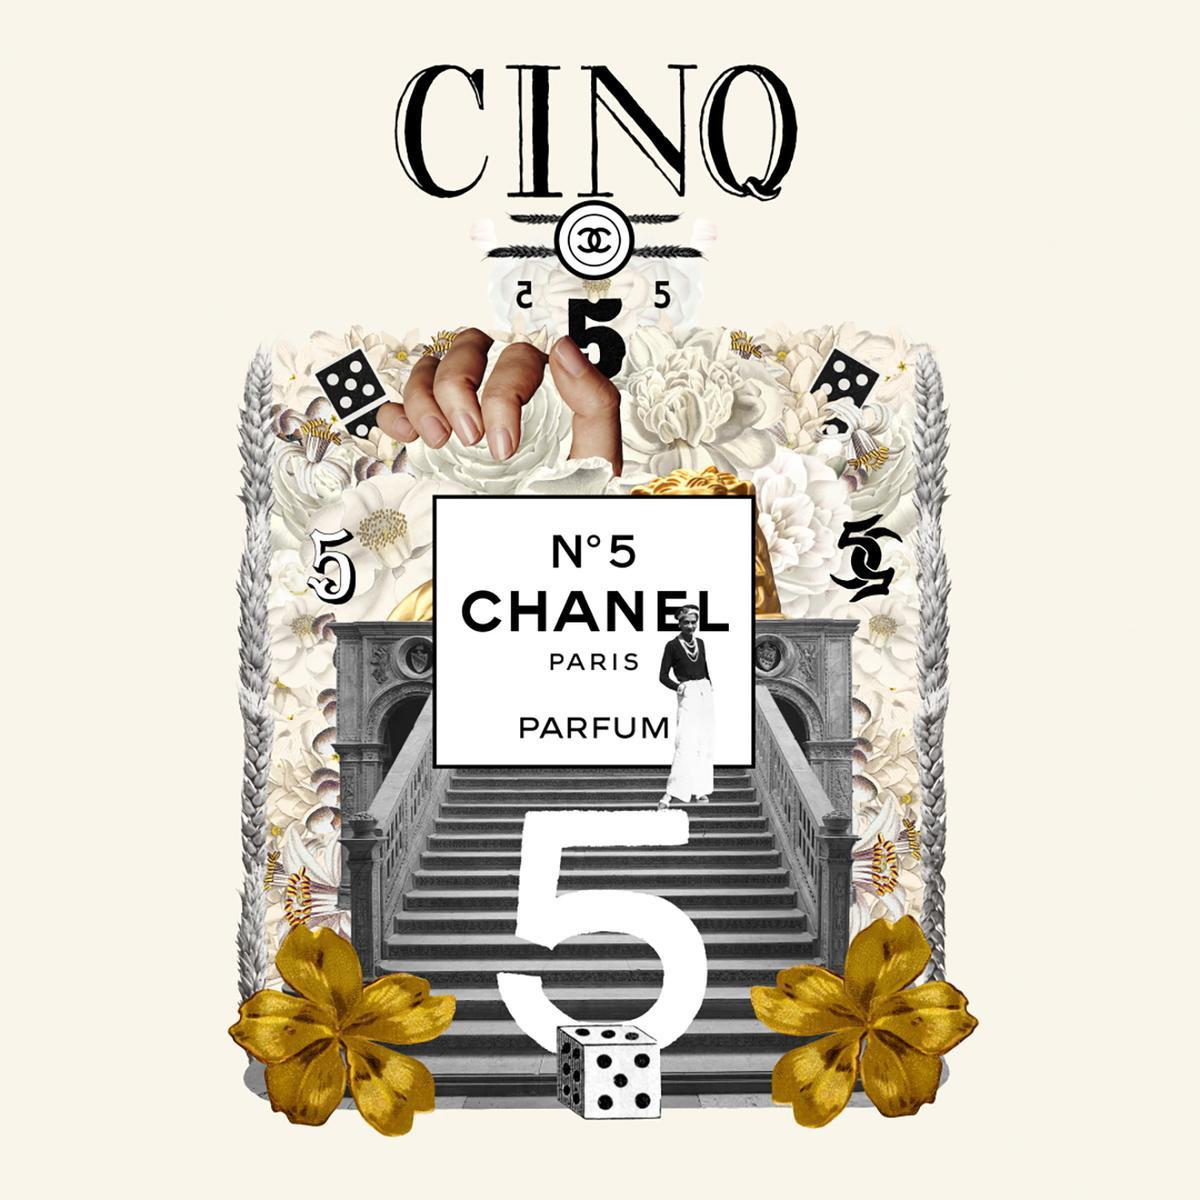 Le N°5 de Chanel fête ses 100 ans: retour en 25 anecdotes sur ce parfum mythique